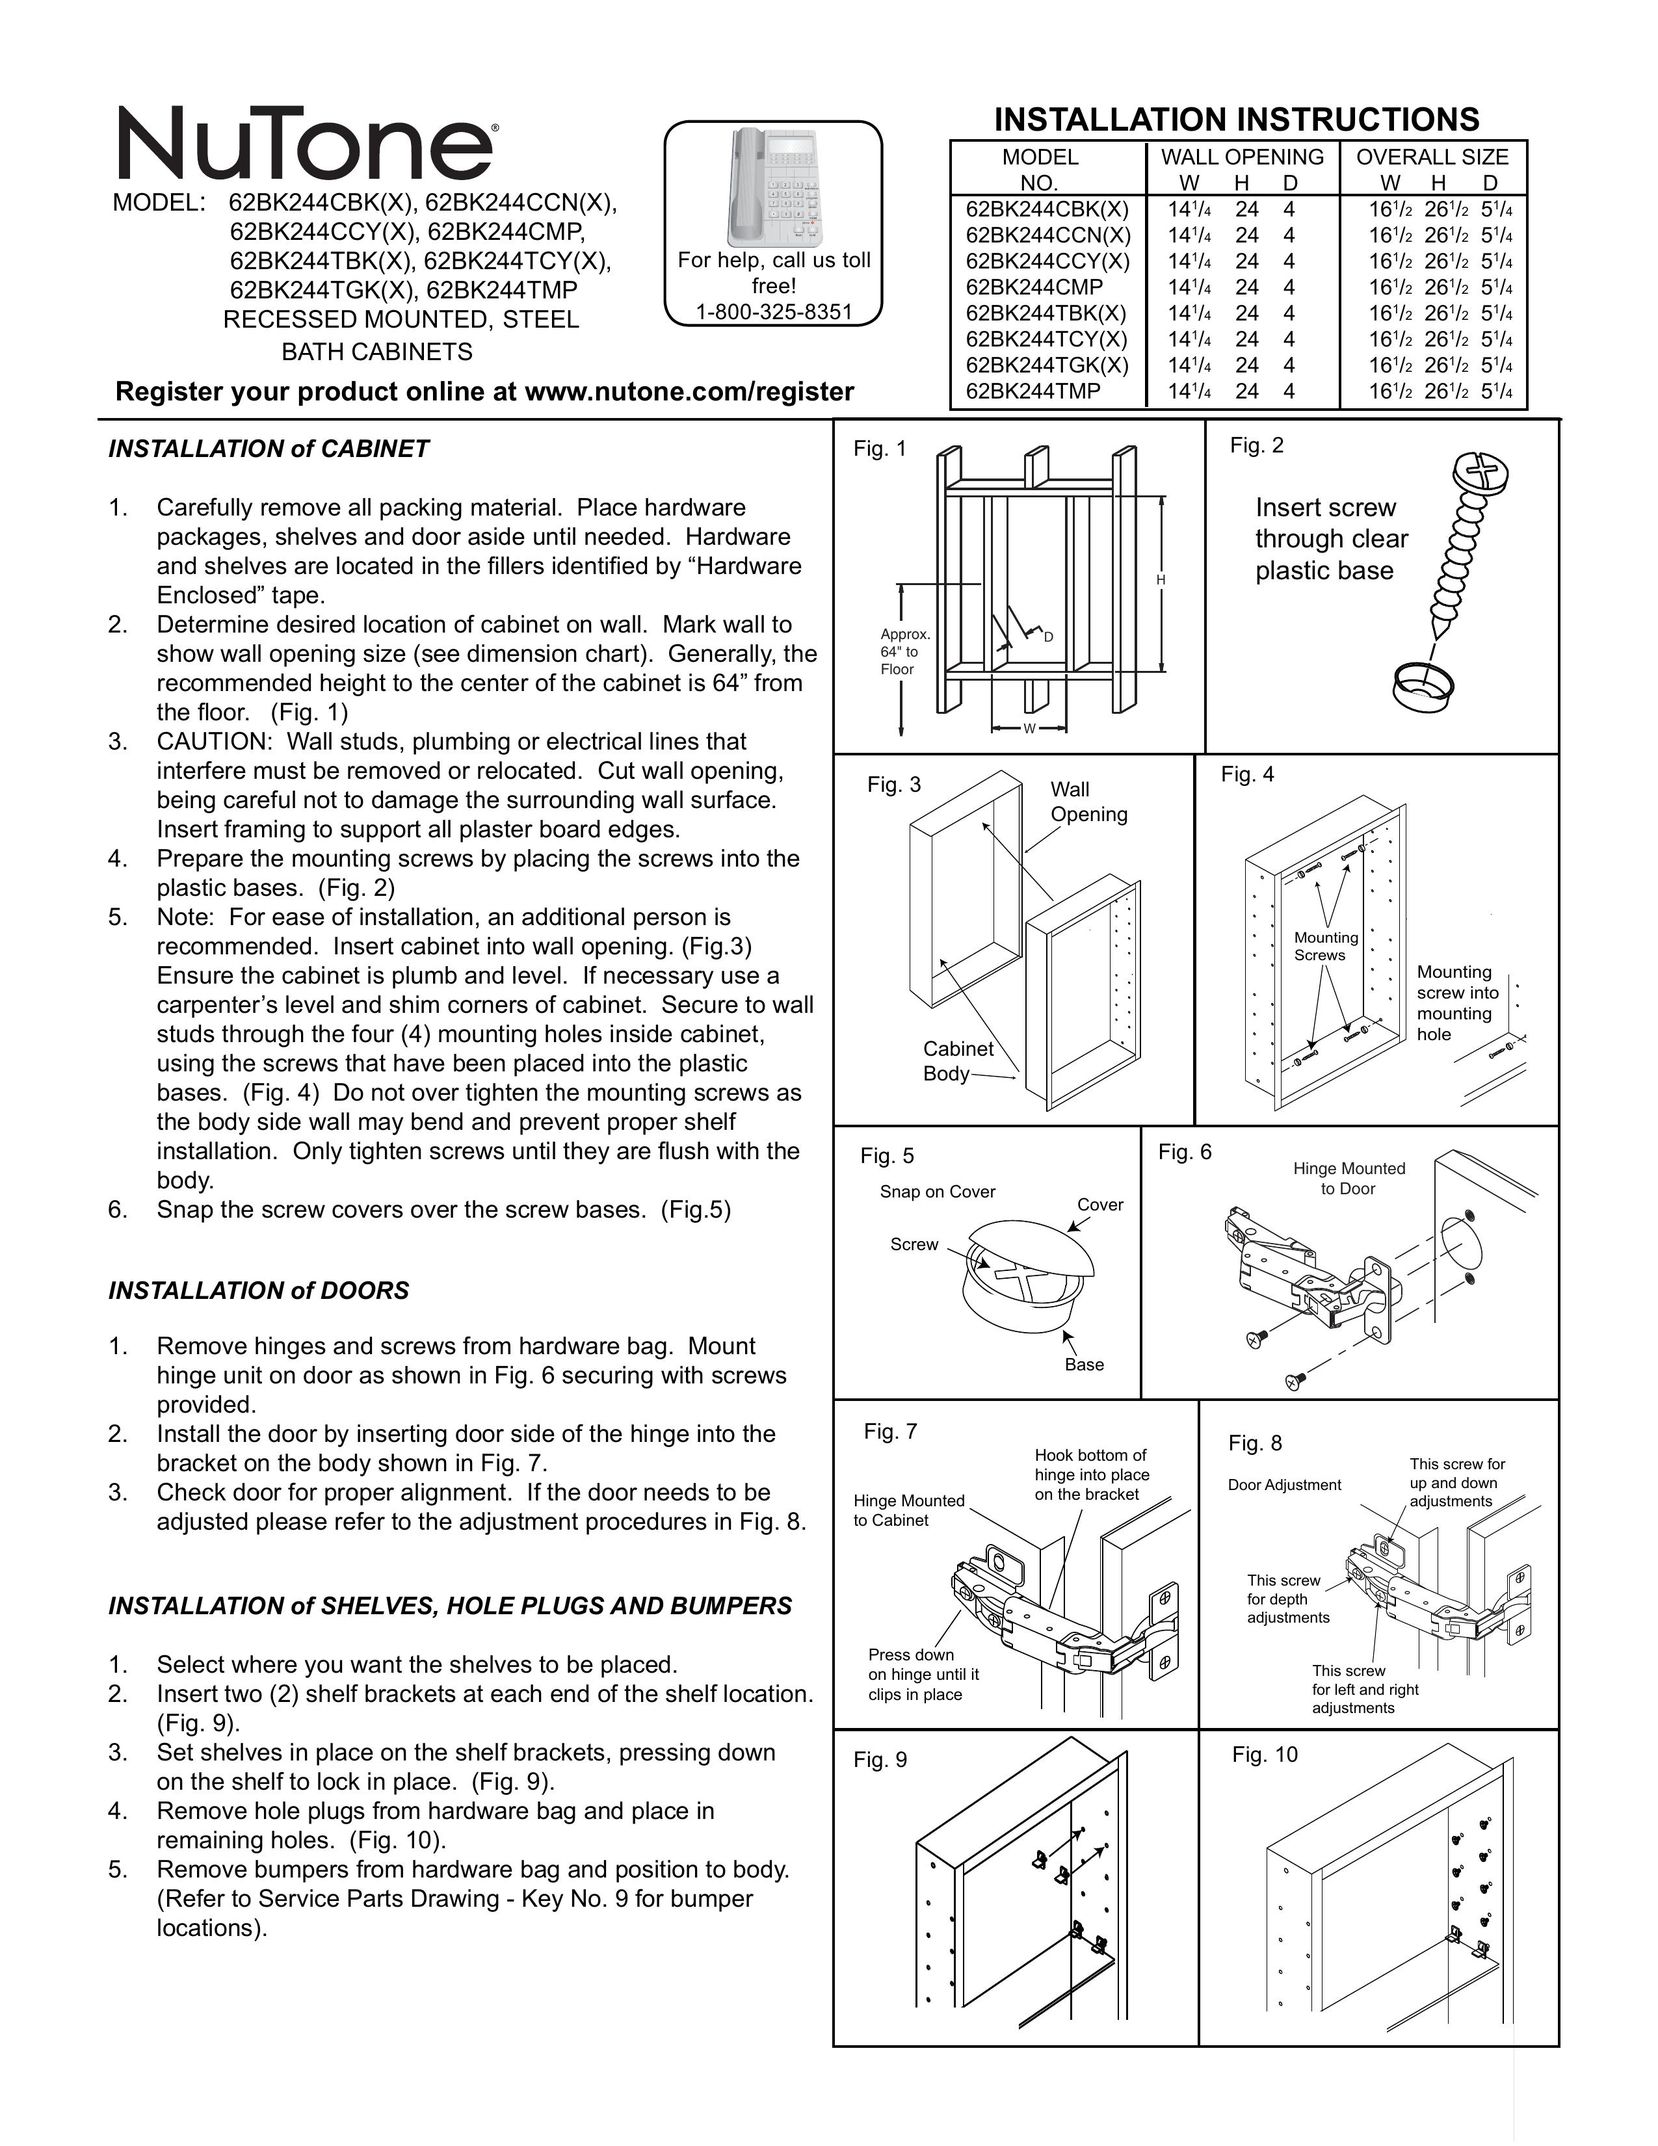 NuTone 62BK244TMP Indoor Furnishings User Manual